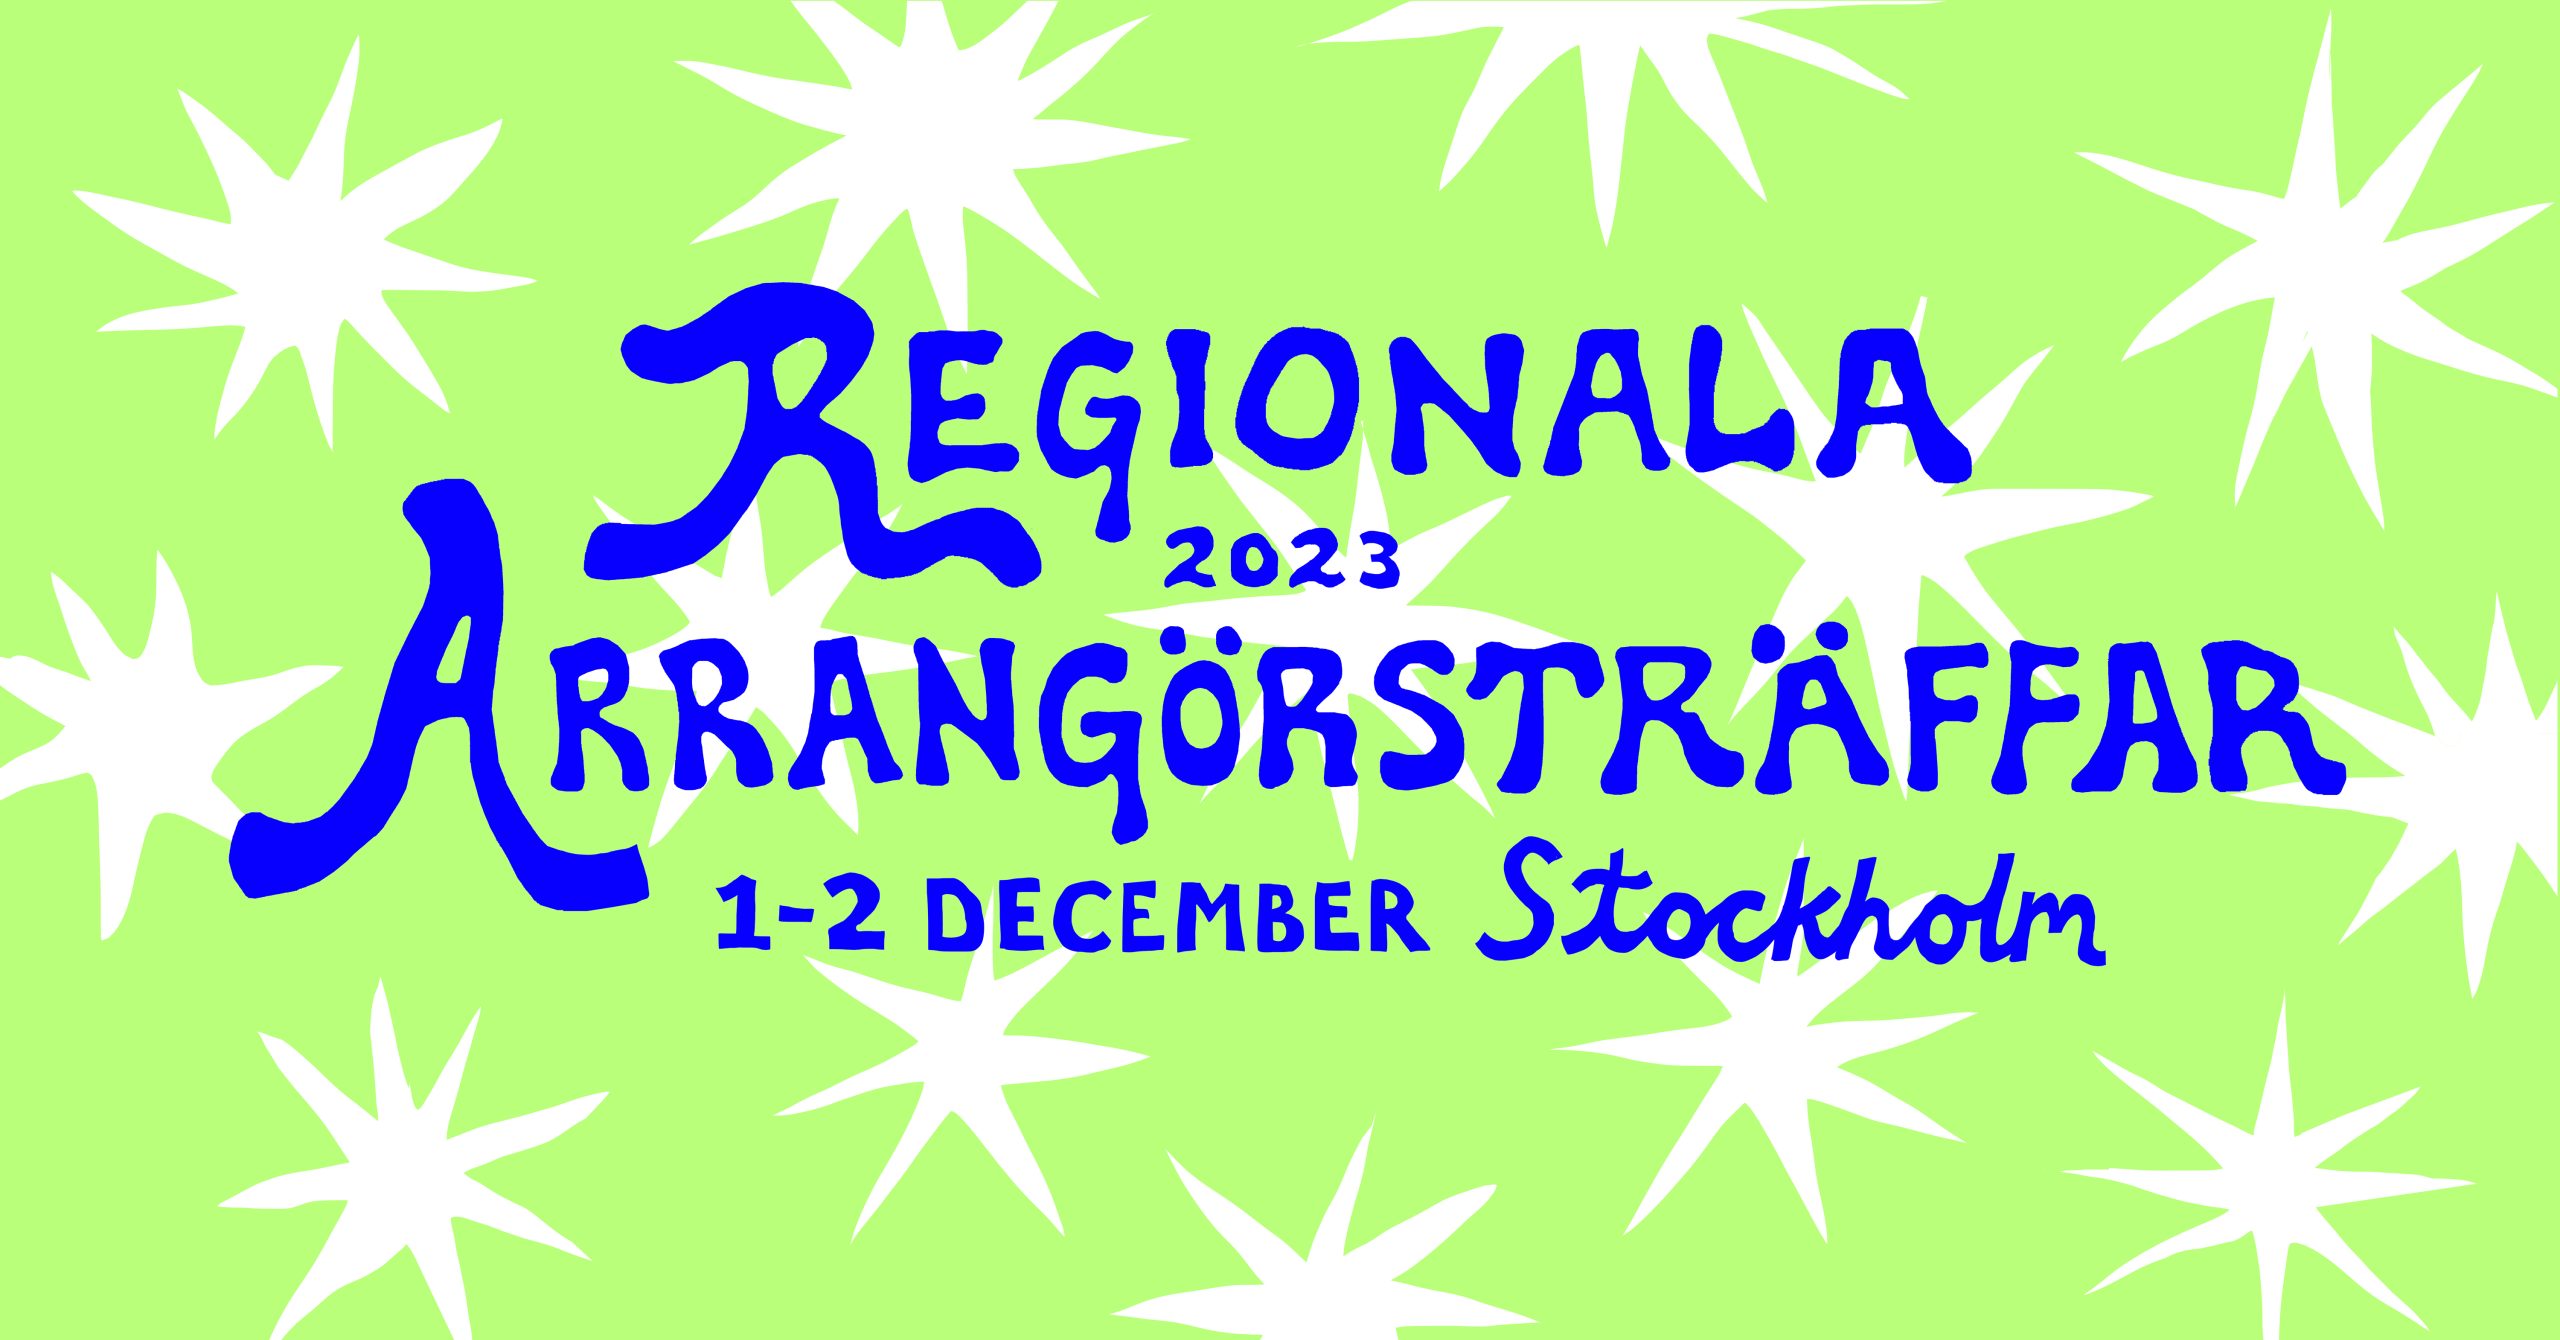 Regional arrangörsträff i Stockholm, 1-2 december